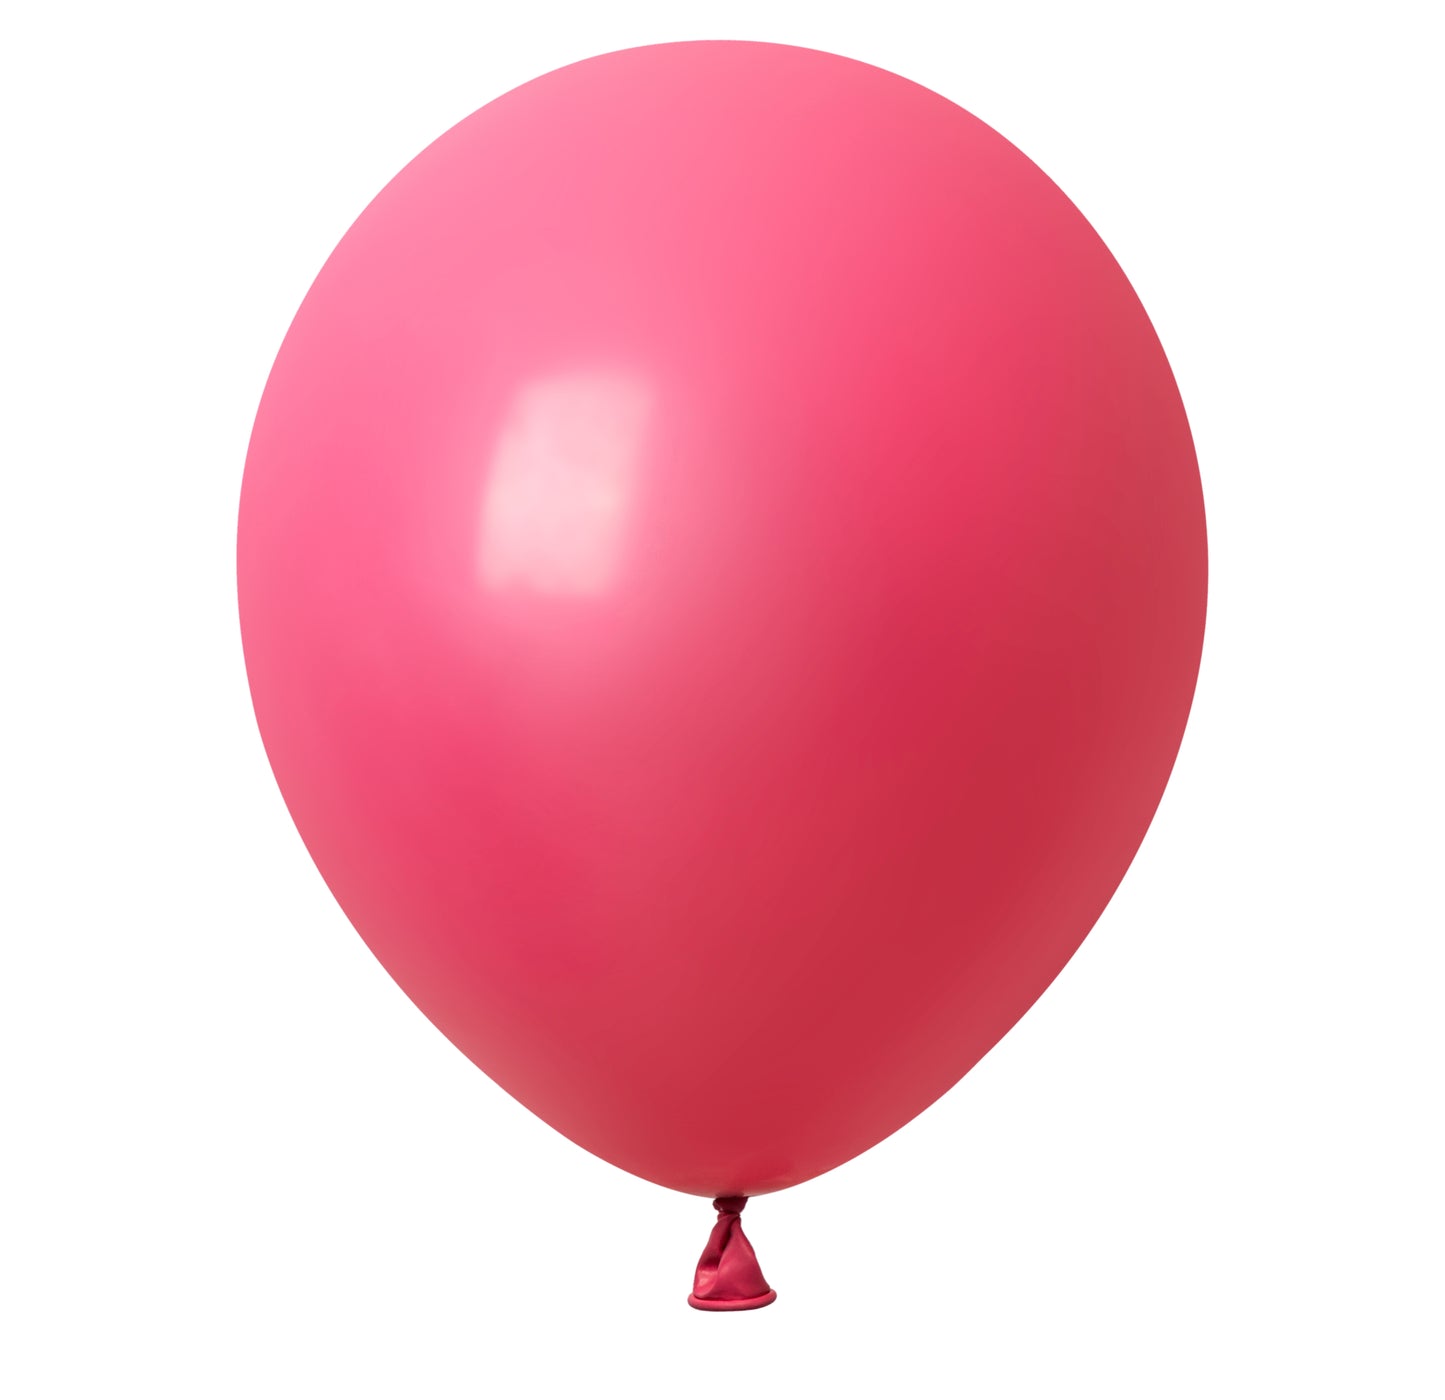 Winntex Premium 18" Flamingo Red Latex Balloon 25ct